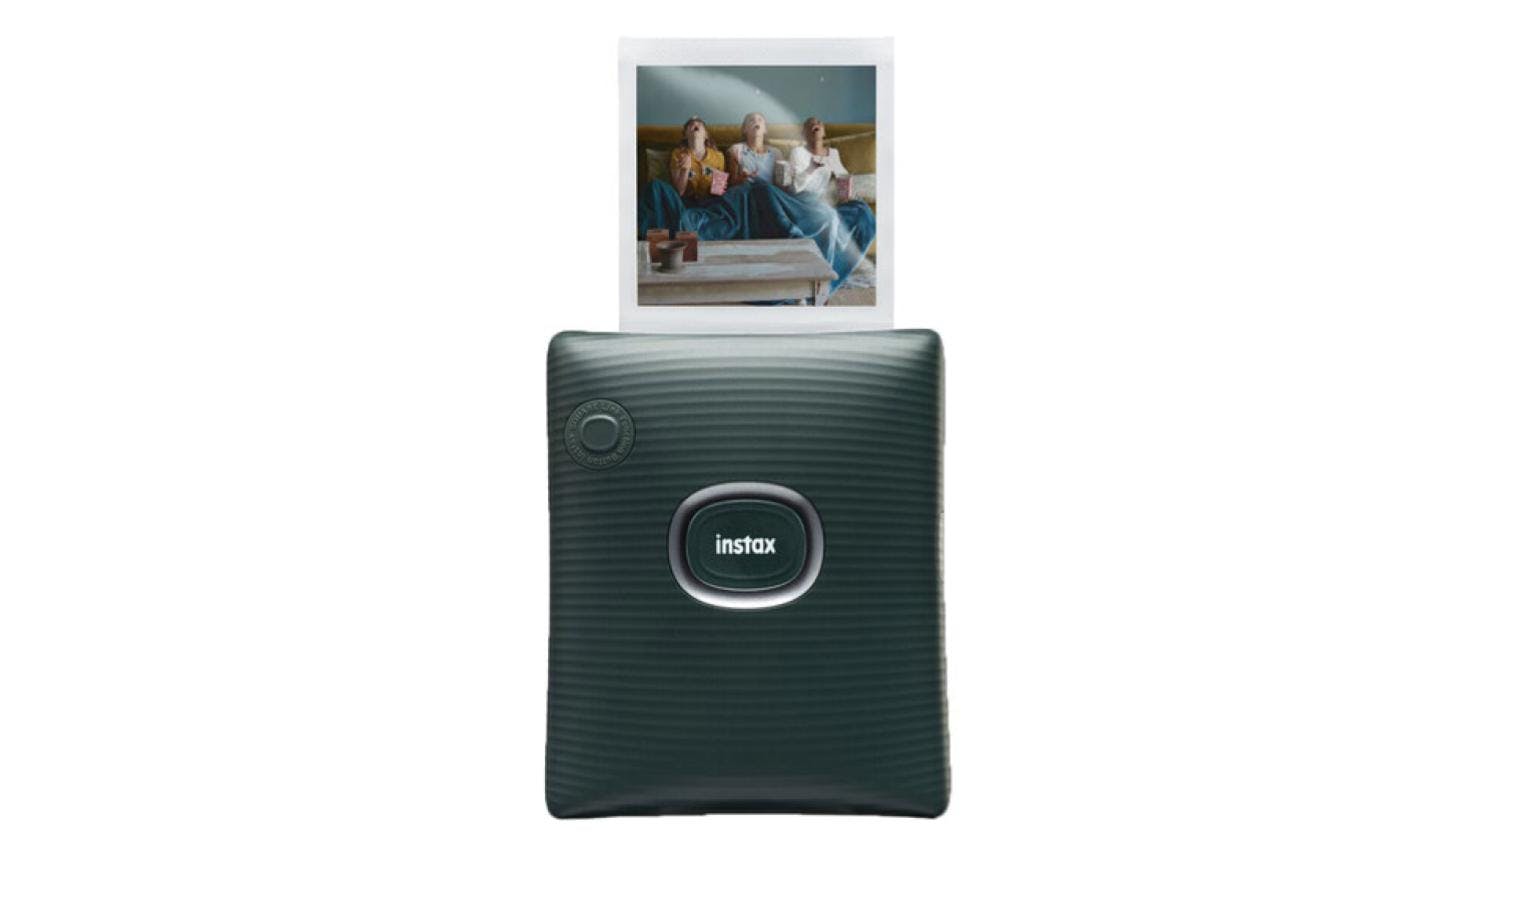 Fujifilm Instax Square Link Smartphone Printer (Midnight Green) - JB Hi-Fi